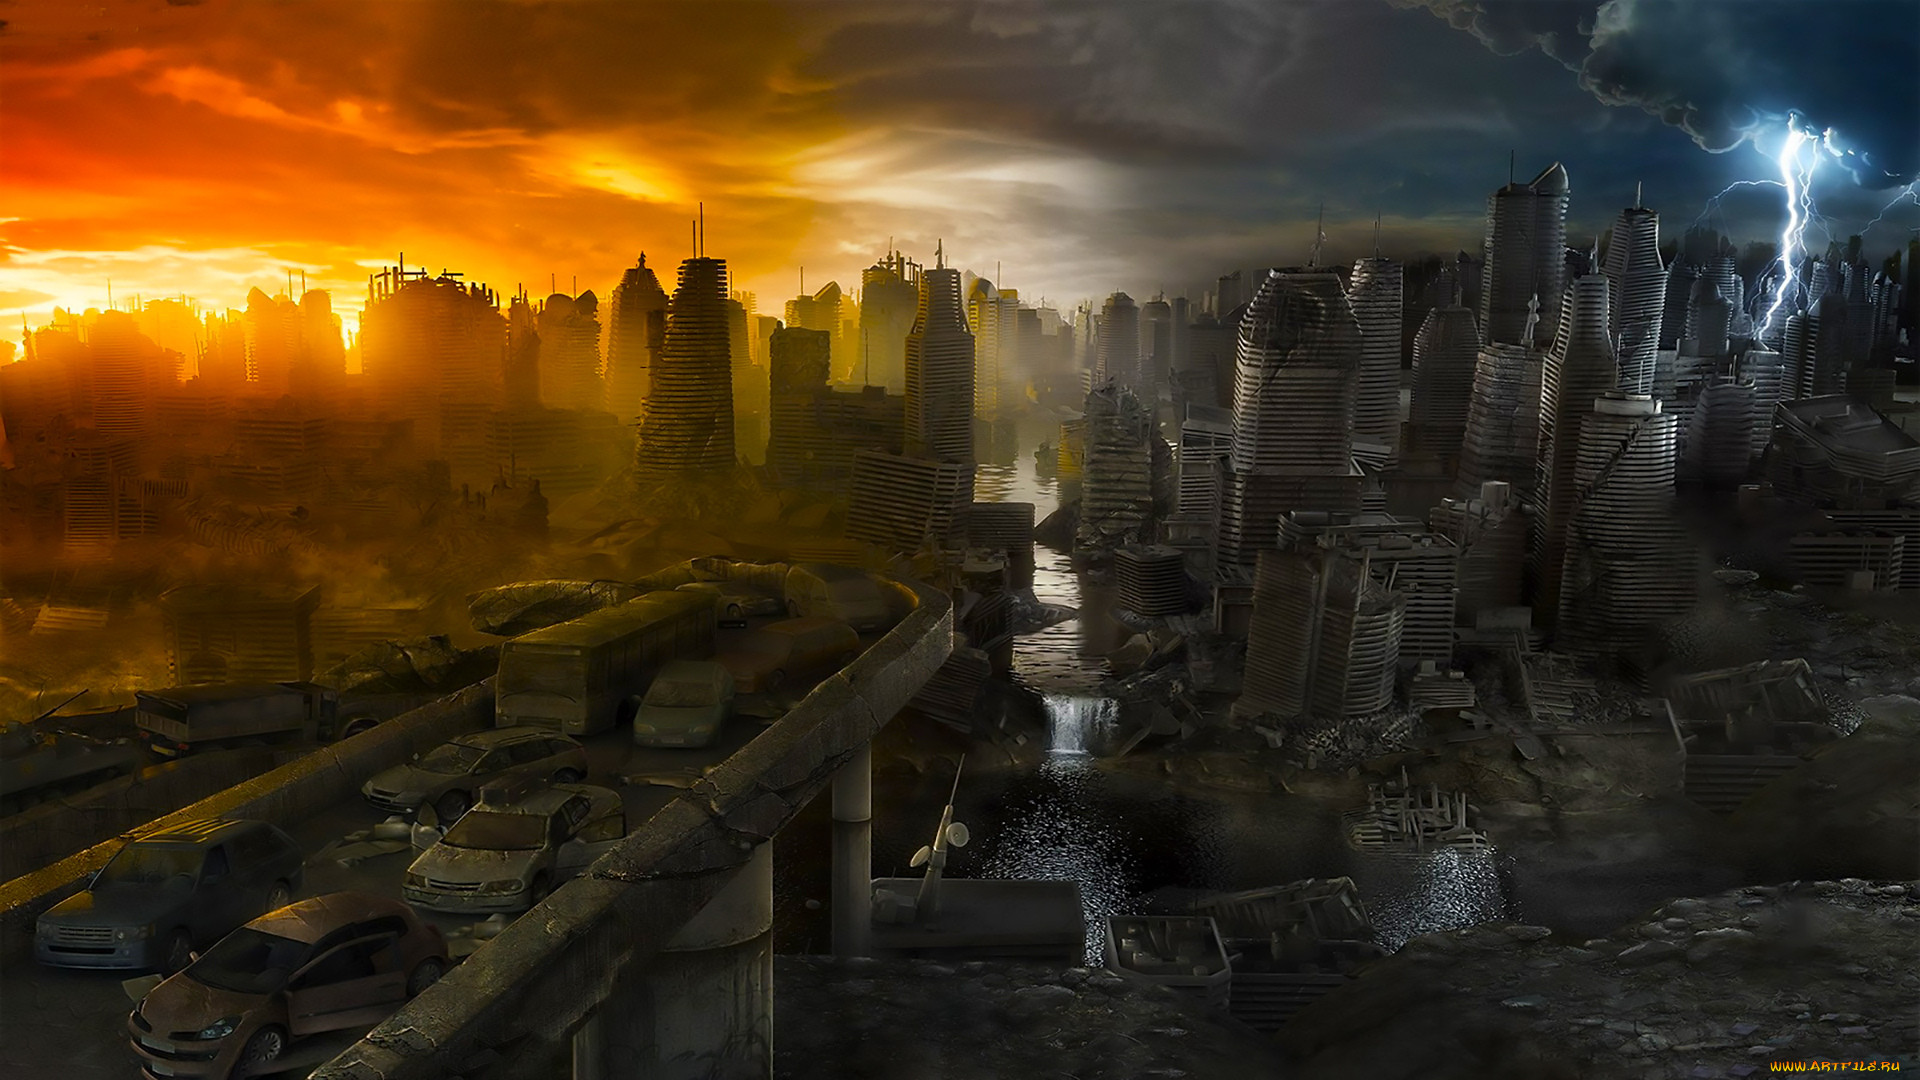 Конец света колокольник. Разрушенный город. Город после апокалипсиса. Разрушенный город будущего. Конец света.